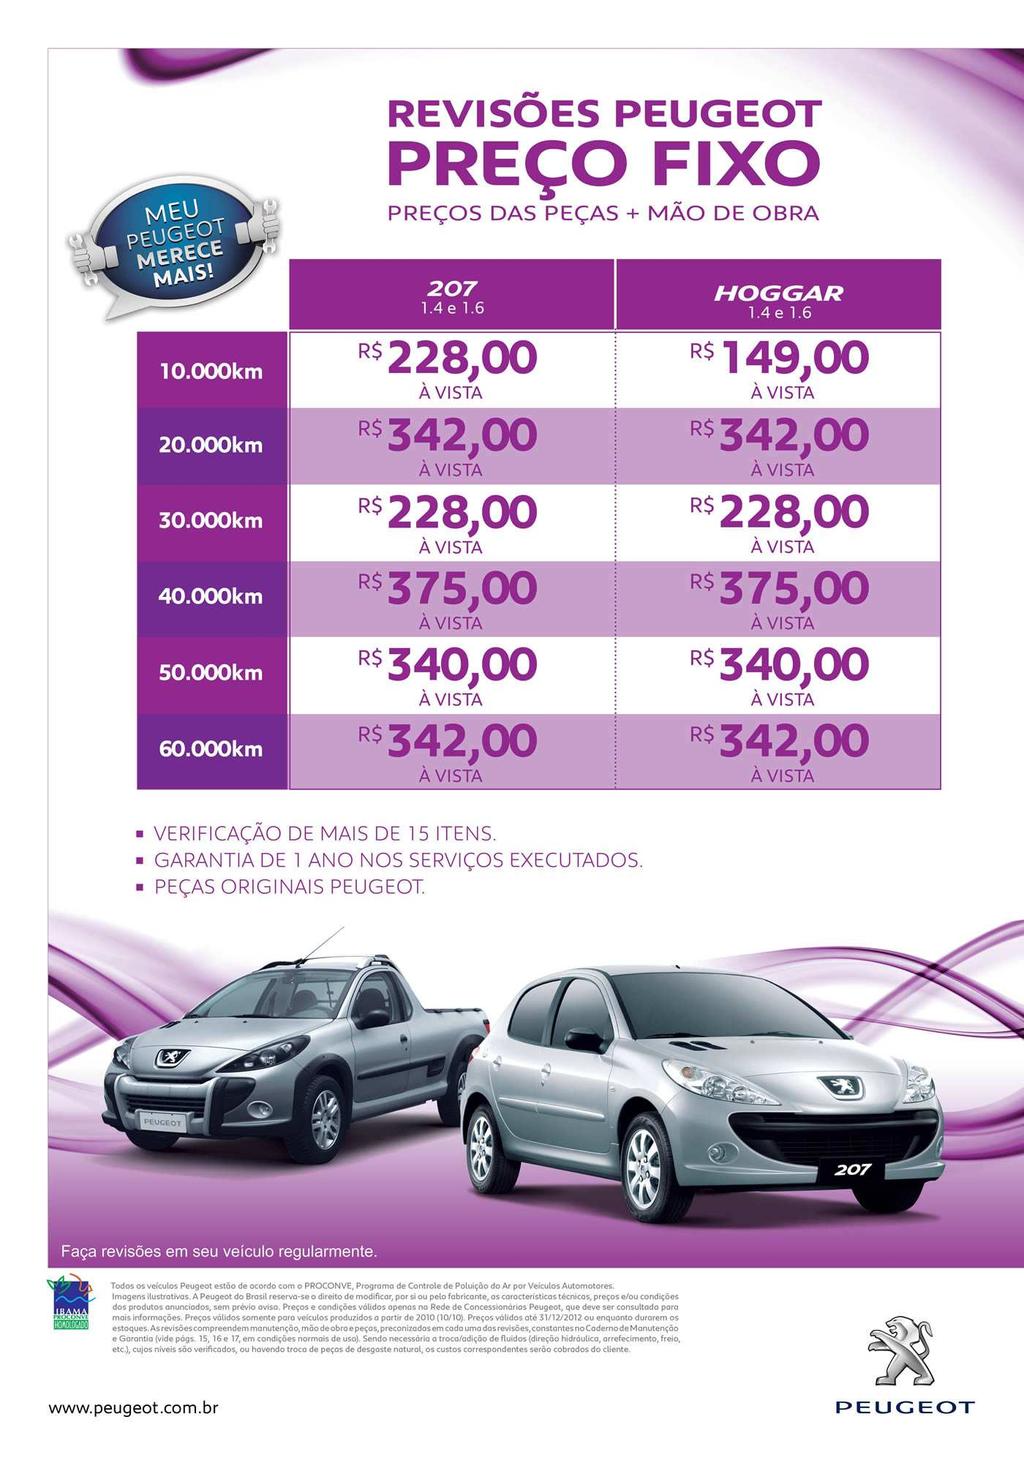 Cartazes Revisões Peugeot Preço Fixo 2012 Sugestão de uso: Divulgação